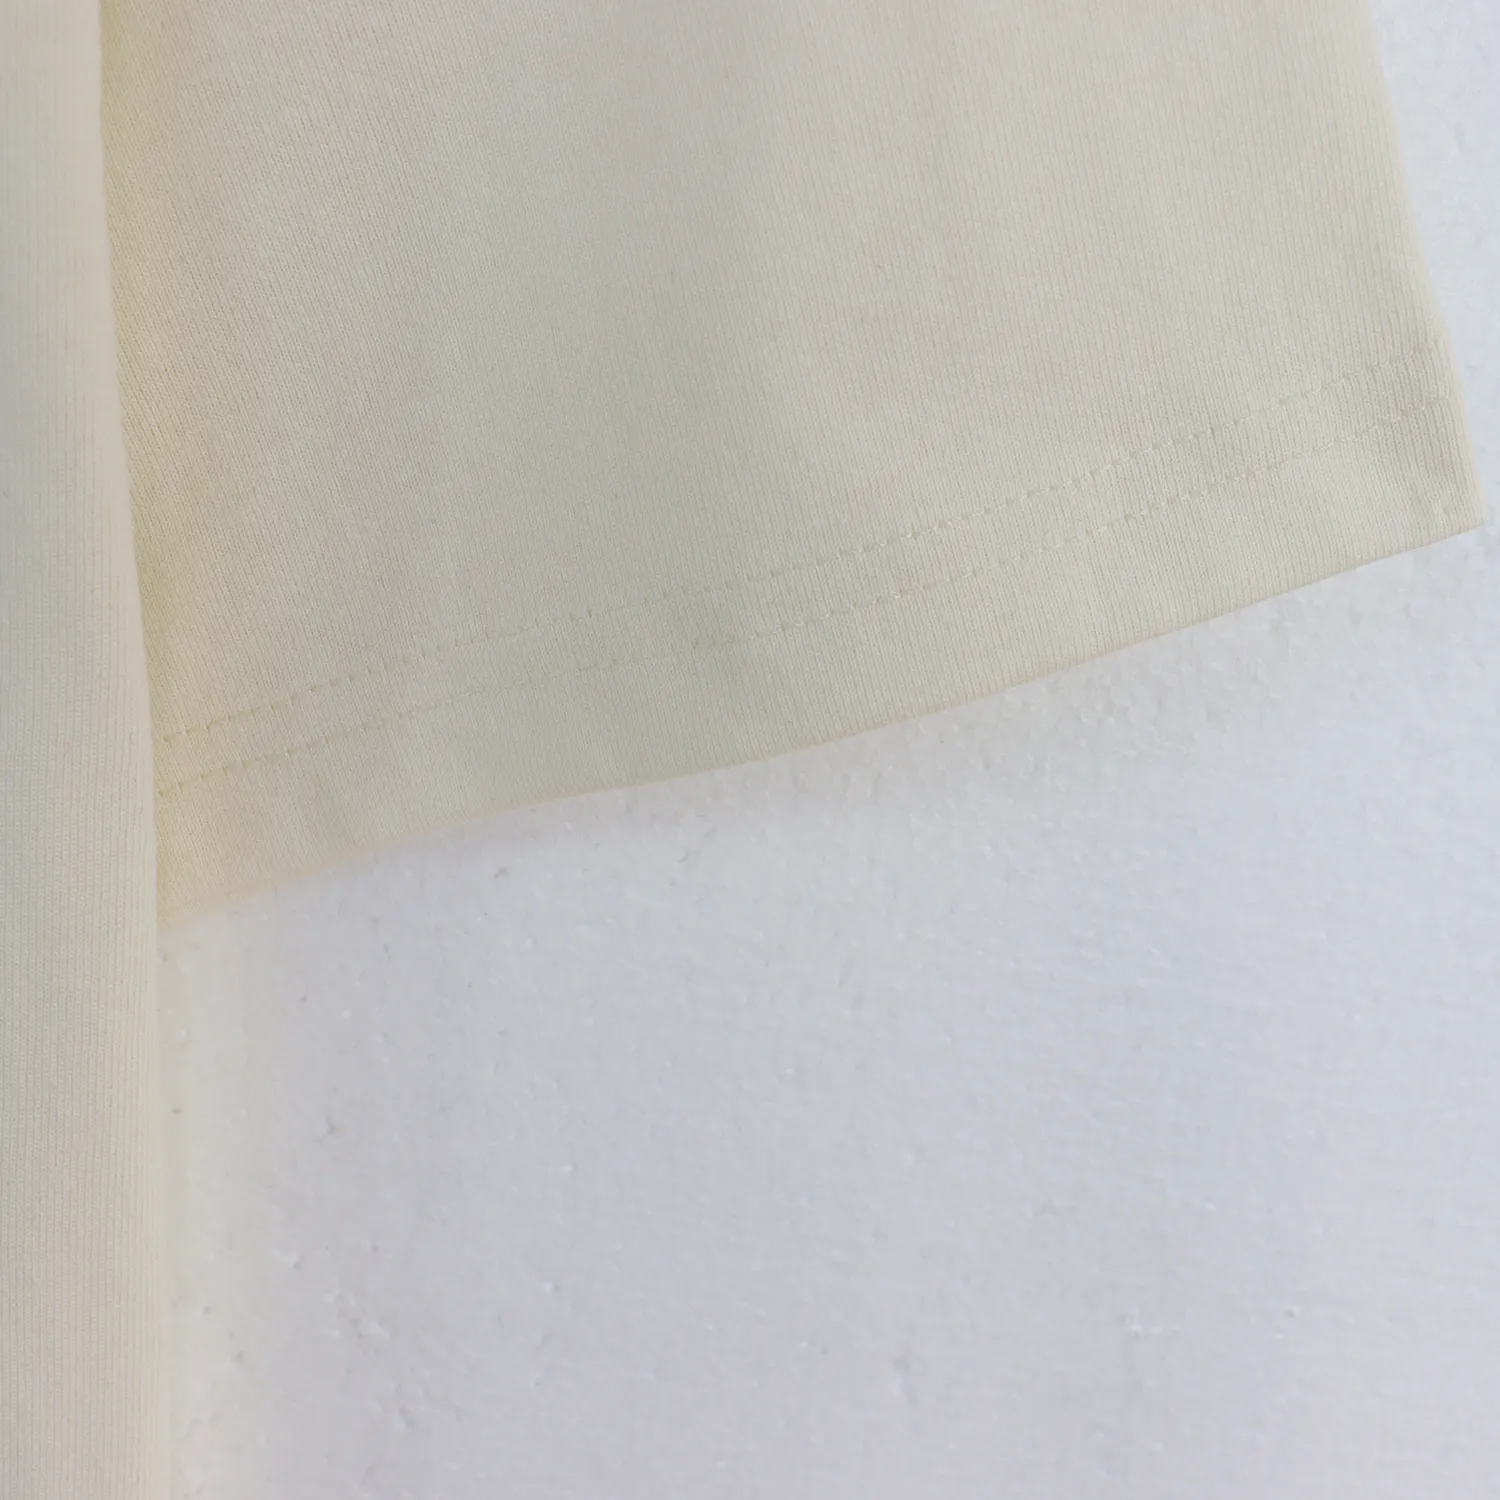 Grafisk tee designer skjorta rhude beige mens t-shirt lös bekväm t-shirt med ett brevtryck för att gå ut S-XL